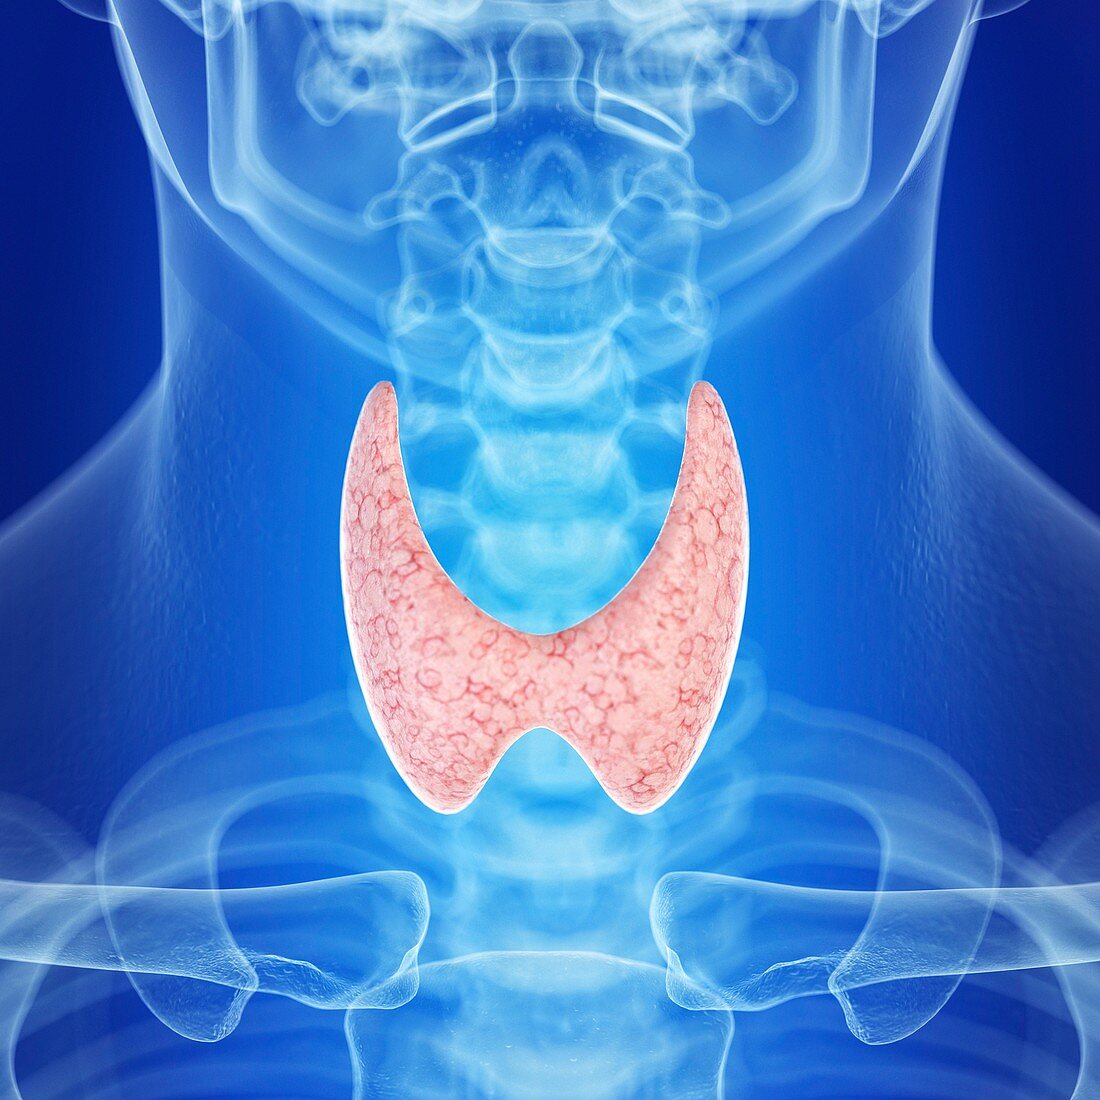 Illustration of a healthy thyroid gland